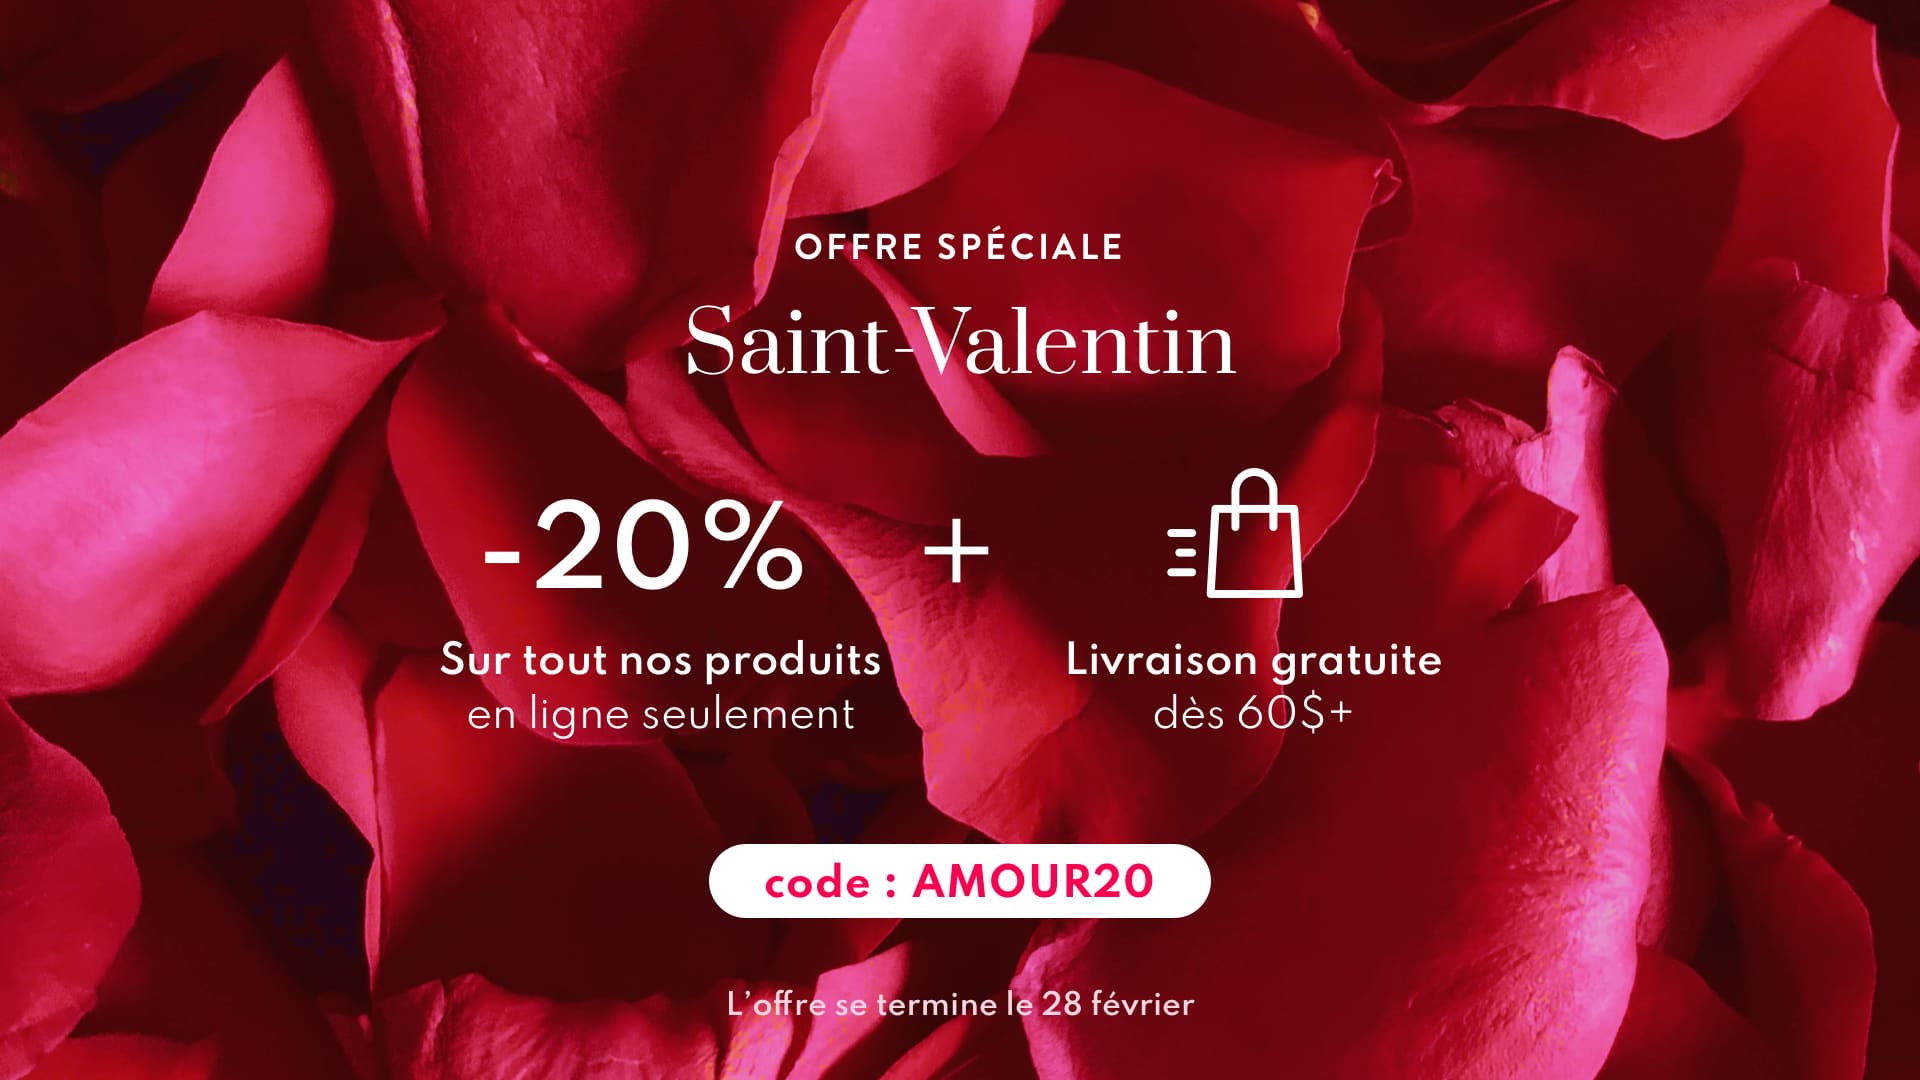 Offre spéciale Saint-Valentin | -20% de rabais + livraison gratuite dès 60$ - Code promo : AMOUR20